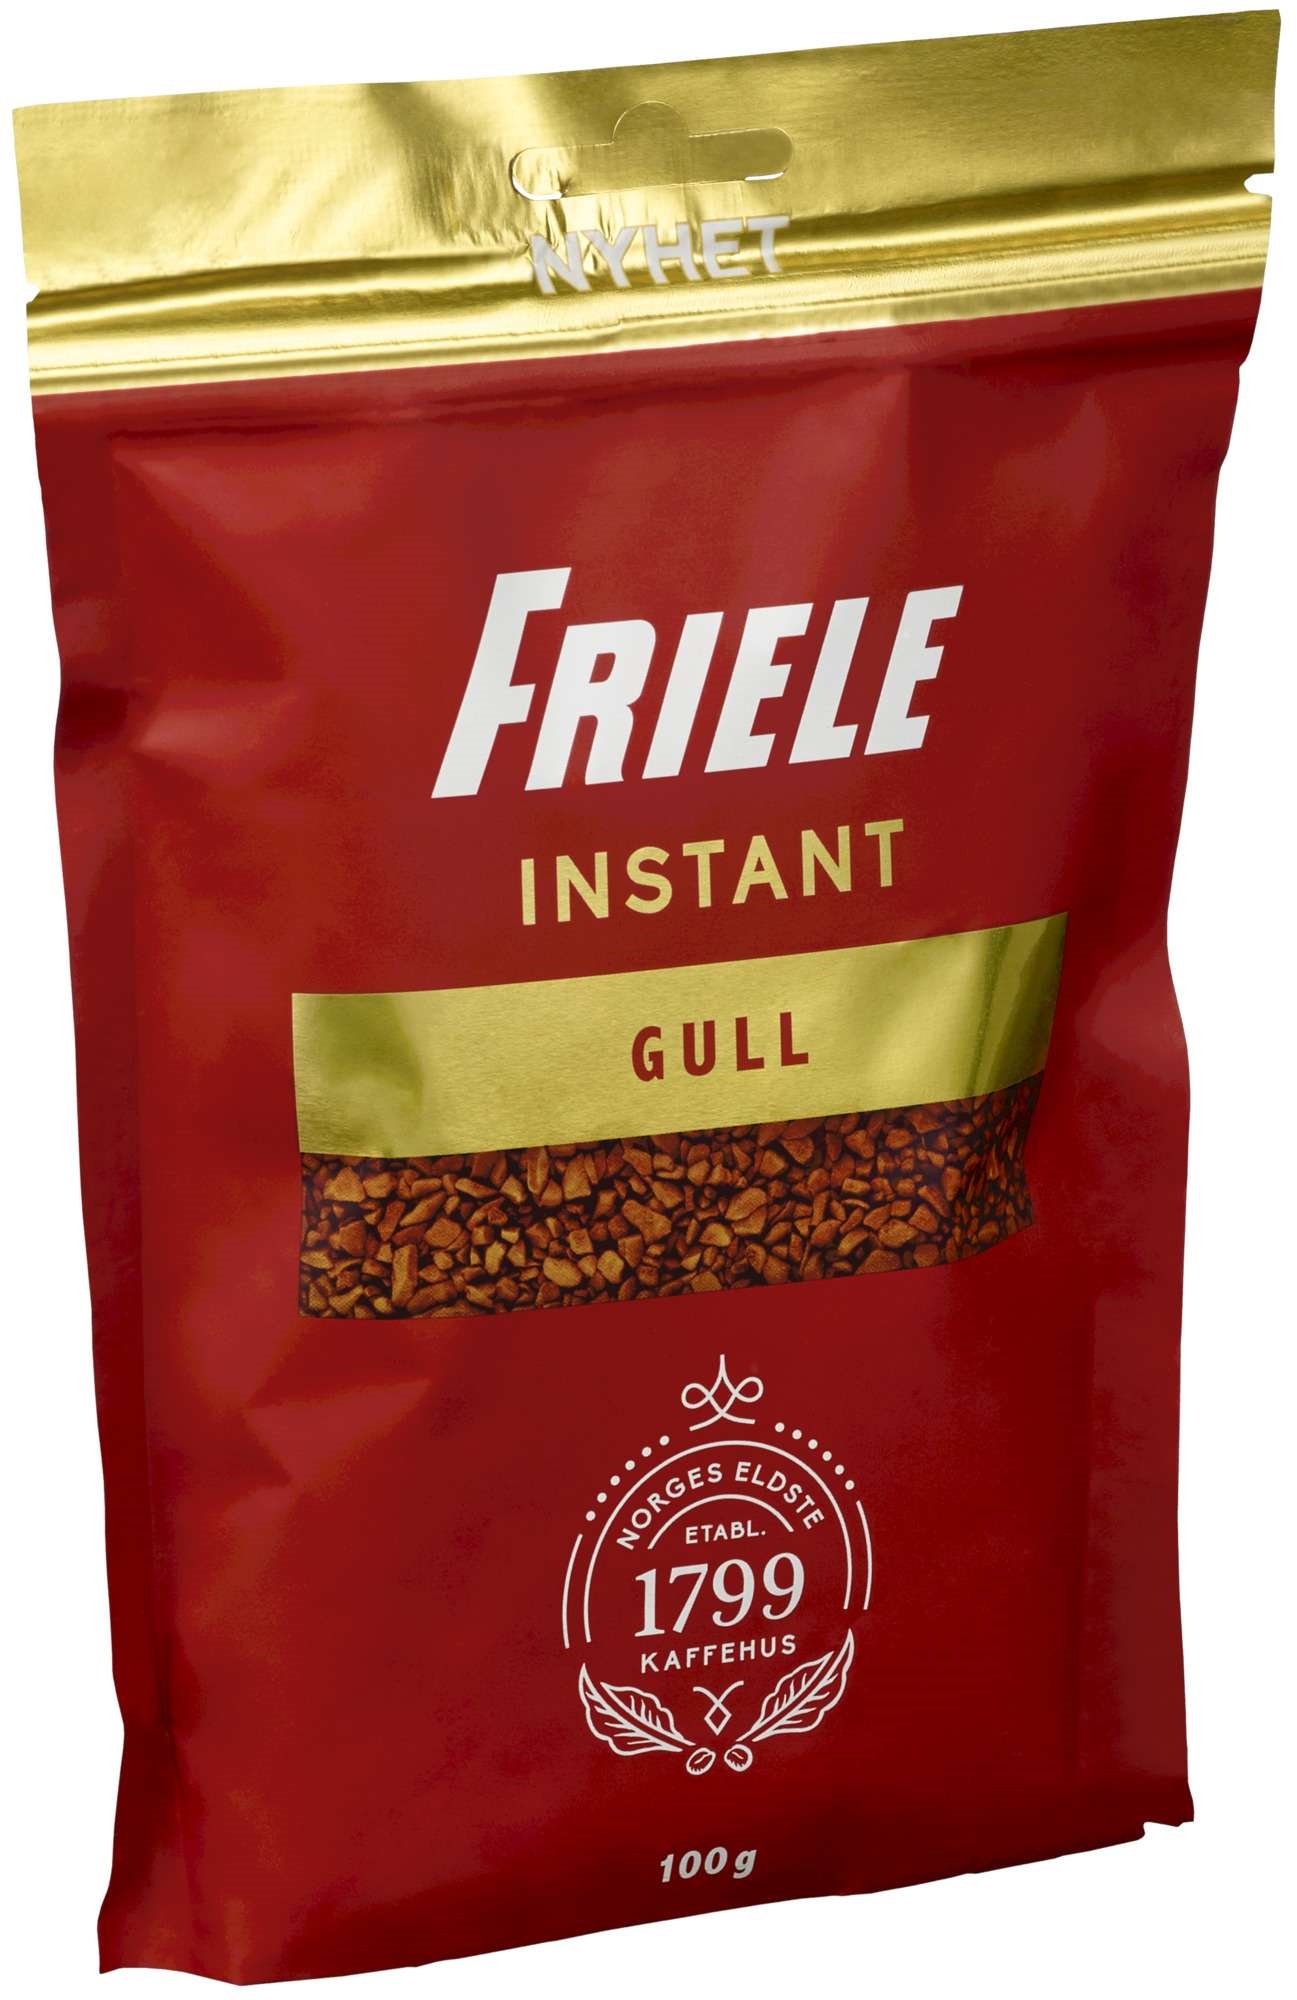 Friele instant gull refill 100g